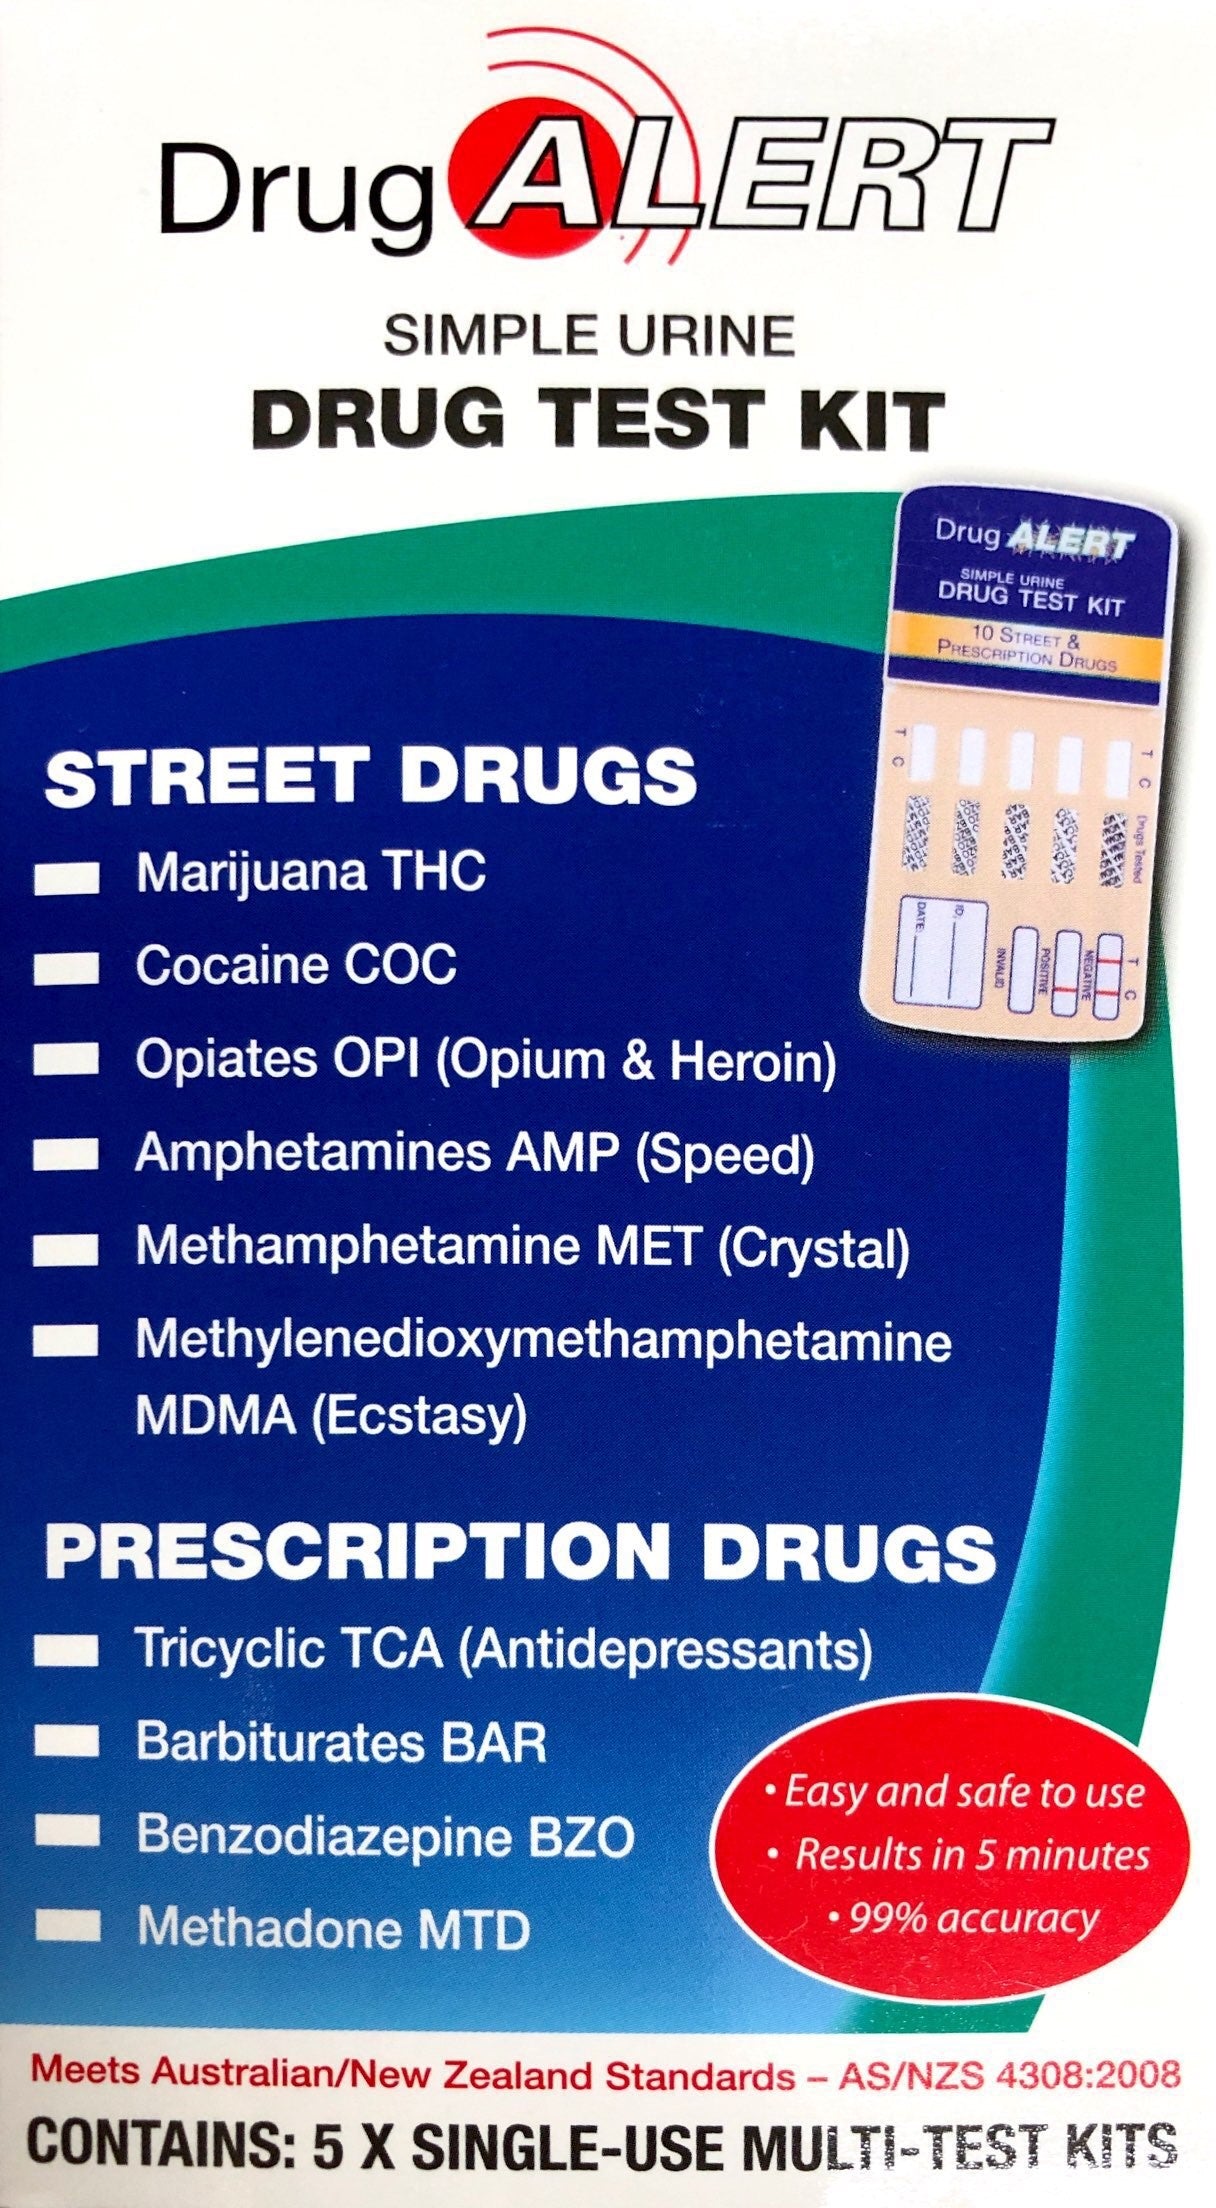 Drug Alert Urine Drug 5 Test Kit 6 street drugs 4 prescription drugs - Pakuranga Pharmacy